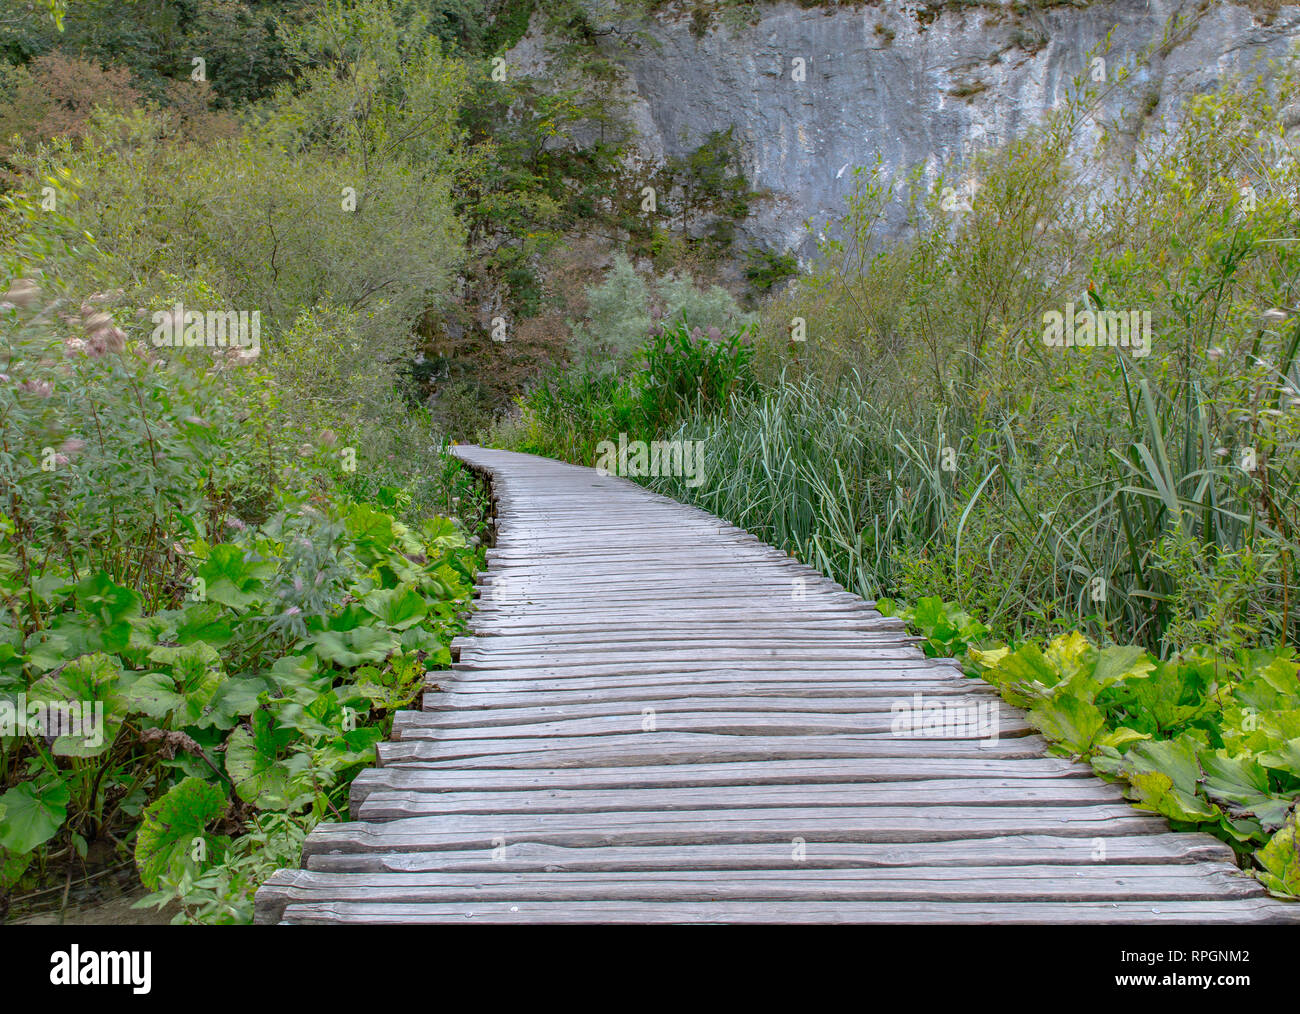 Uno de los muchos senderos de madera que llevan visitantes througt la belleza del parque nacional de los Lagos de Plitvice en Croacia Foto de stock